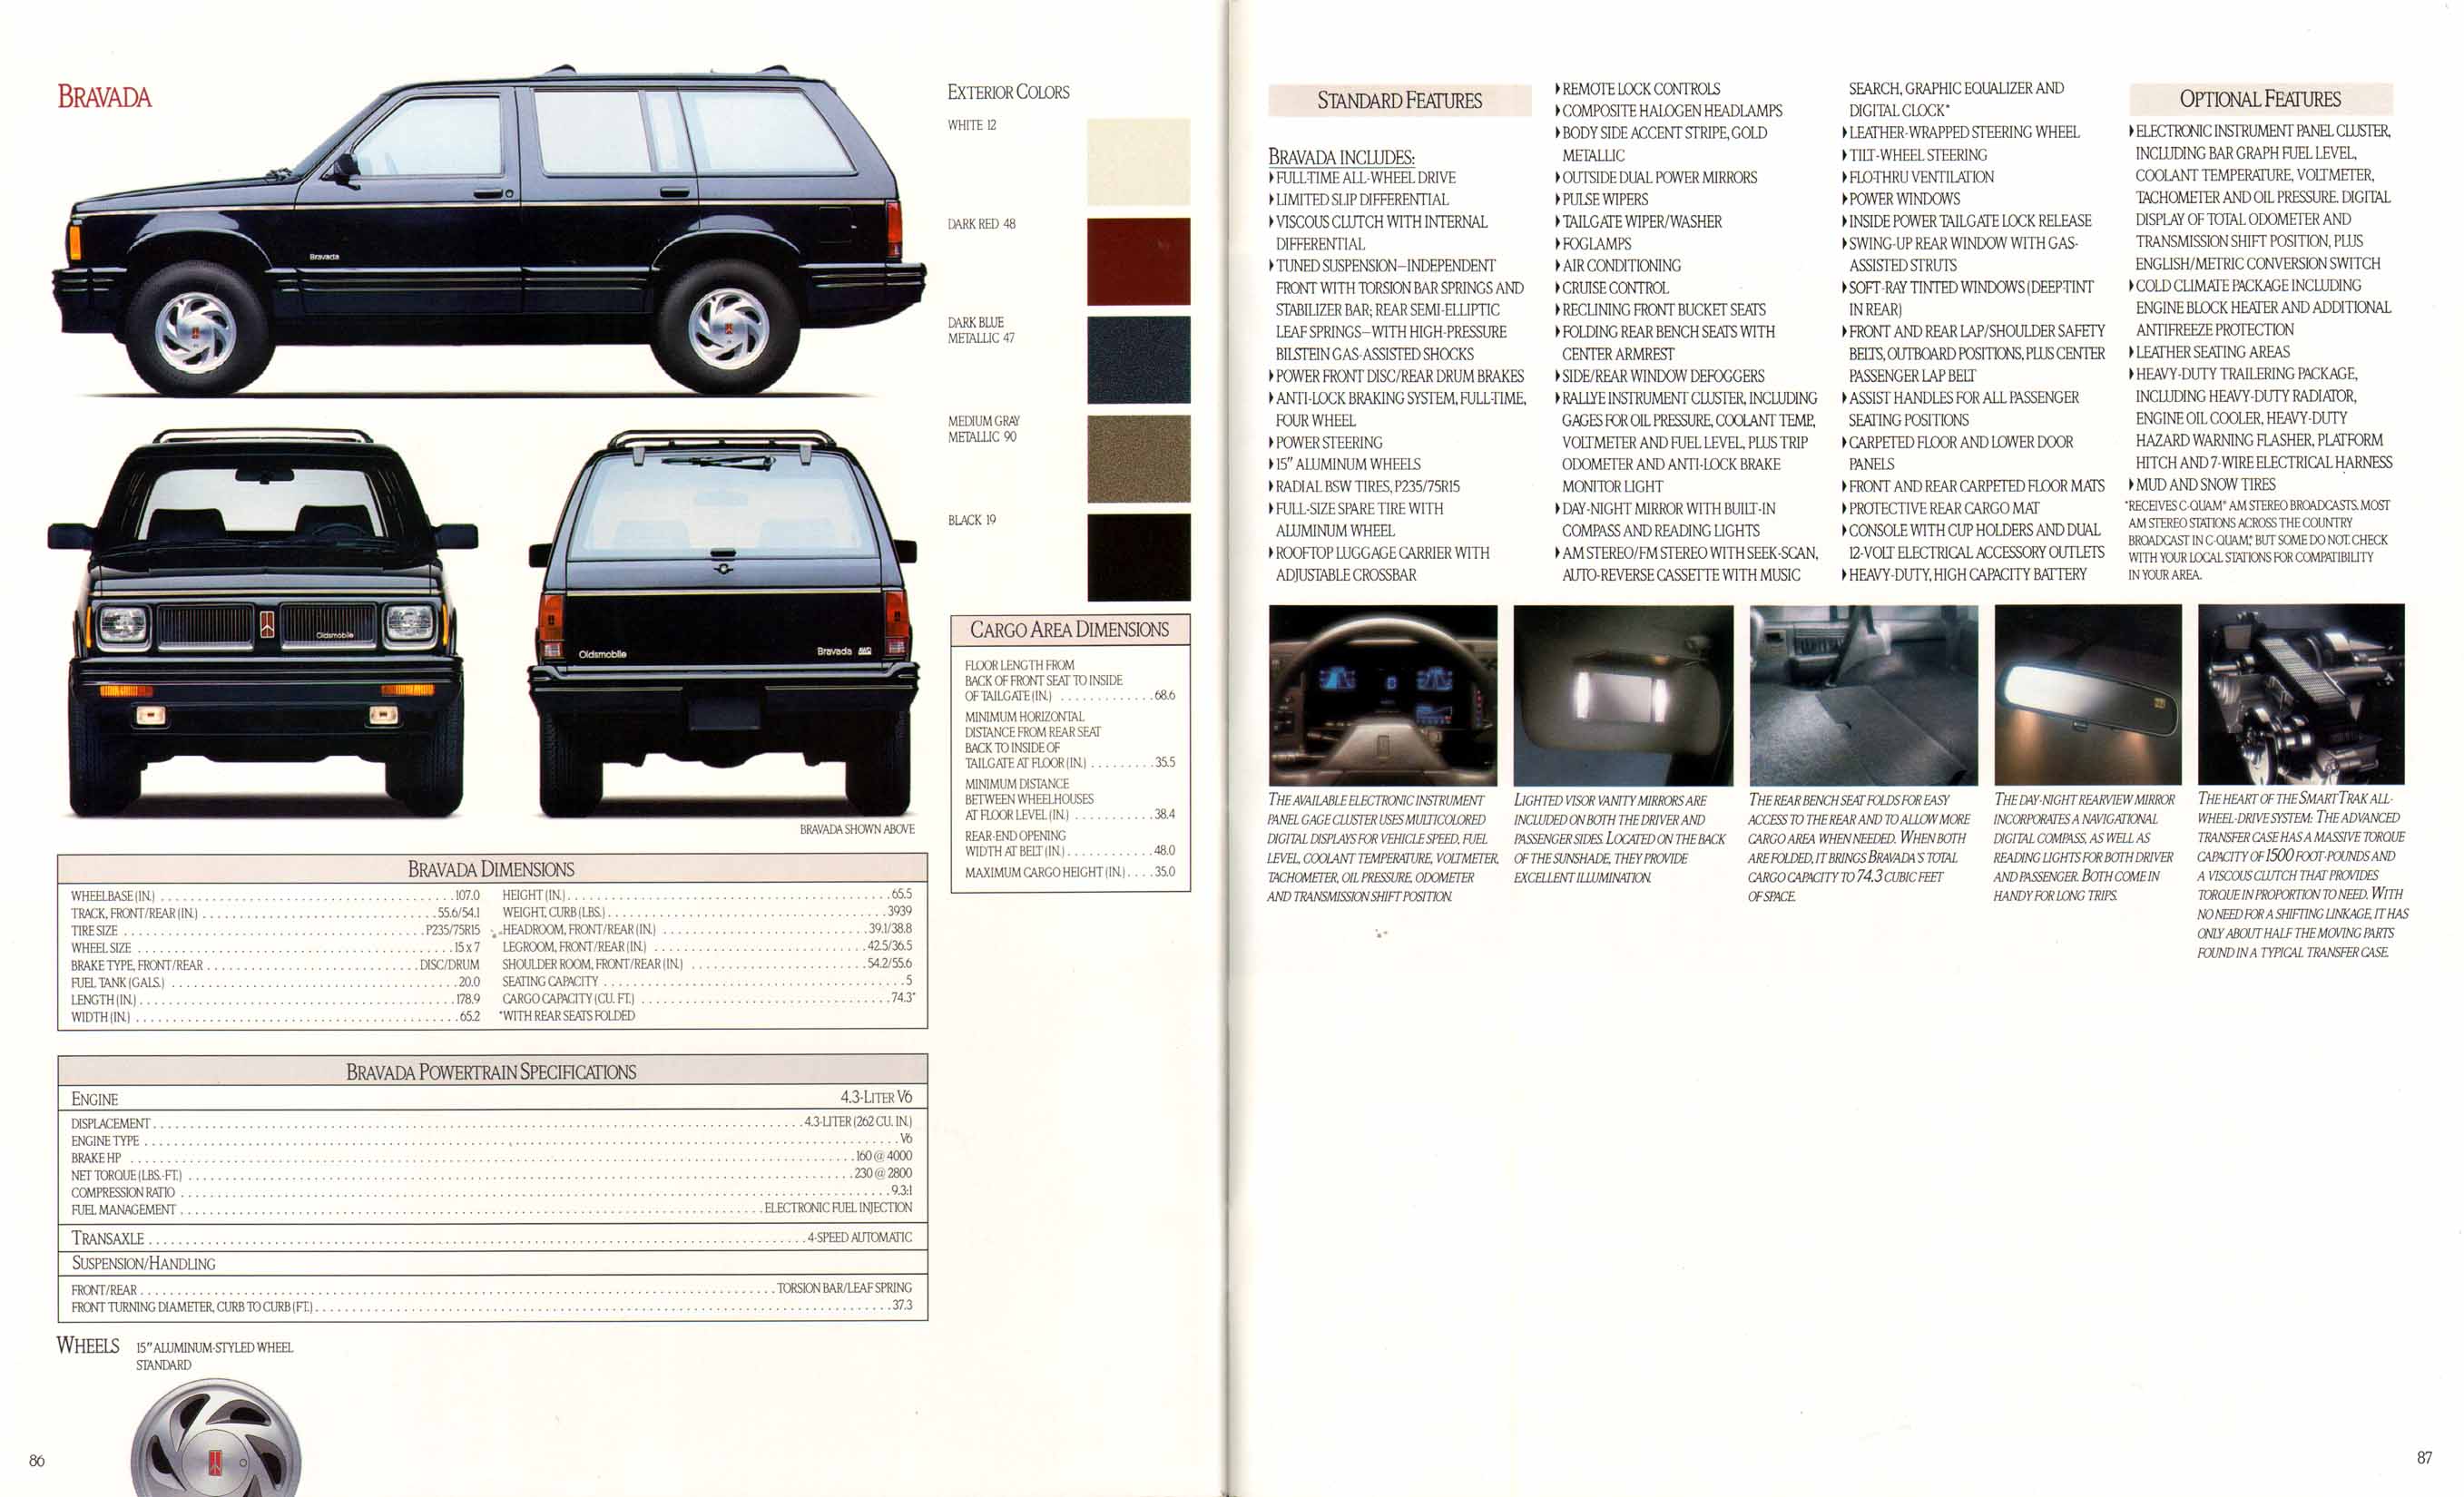 1991_Oldsmobile_Full_Line_Prestige-86-87